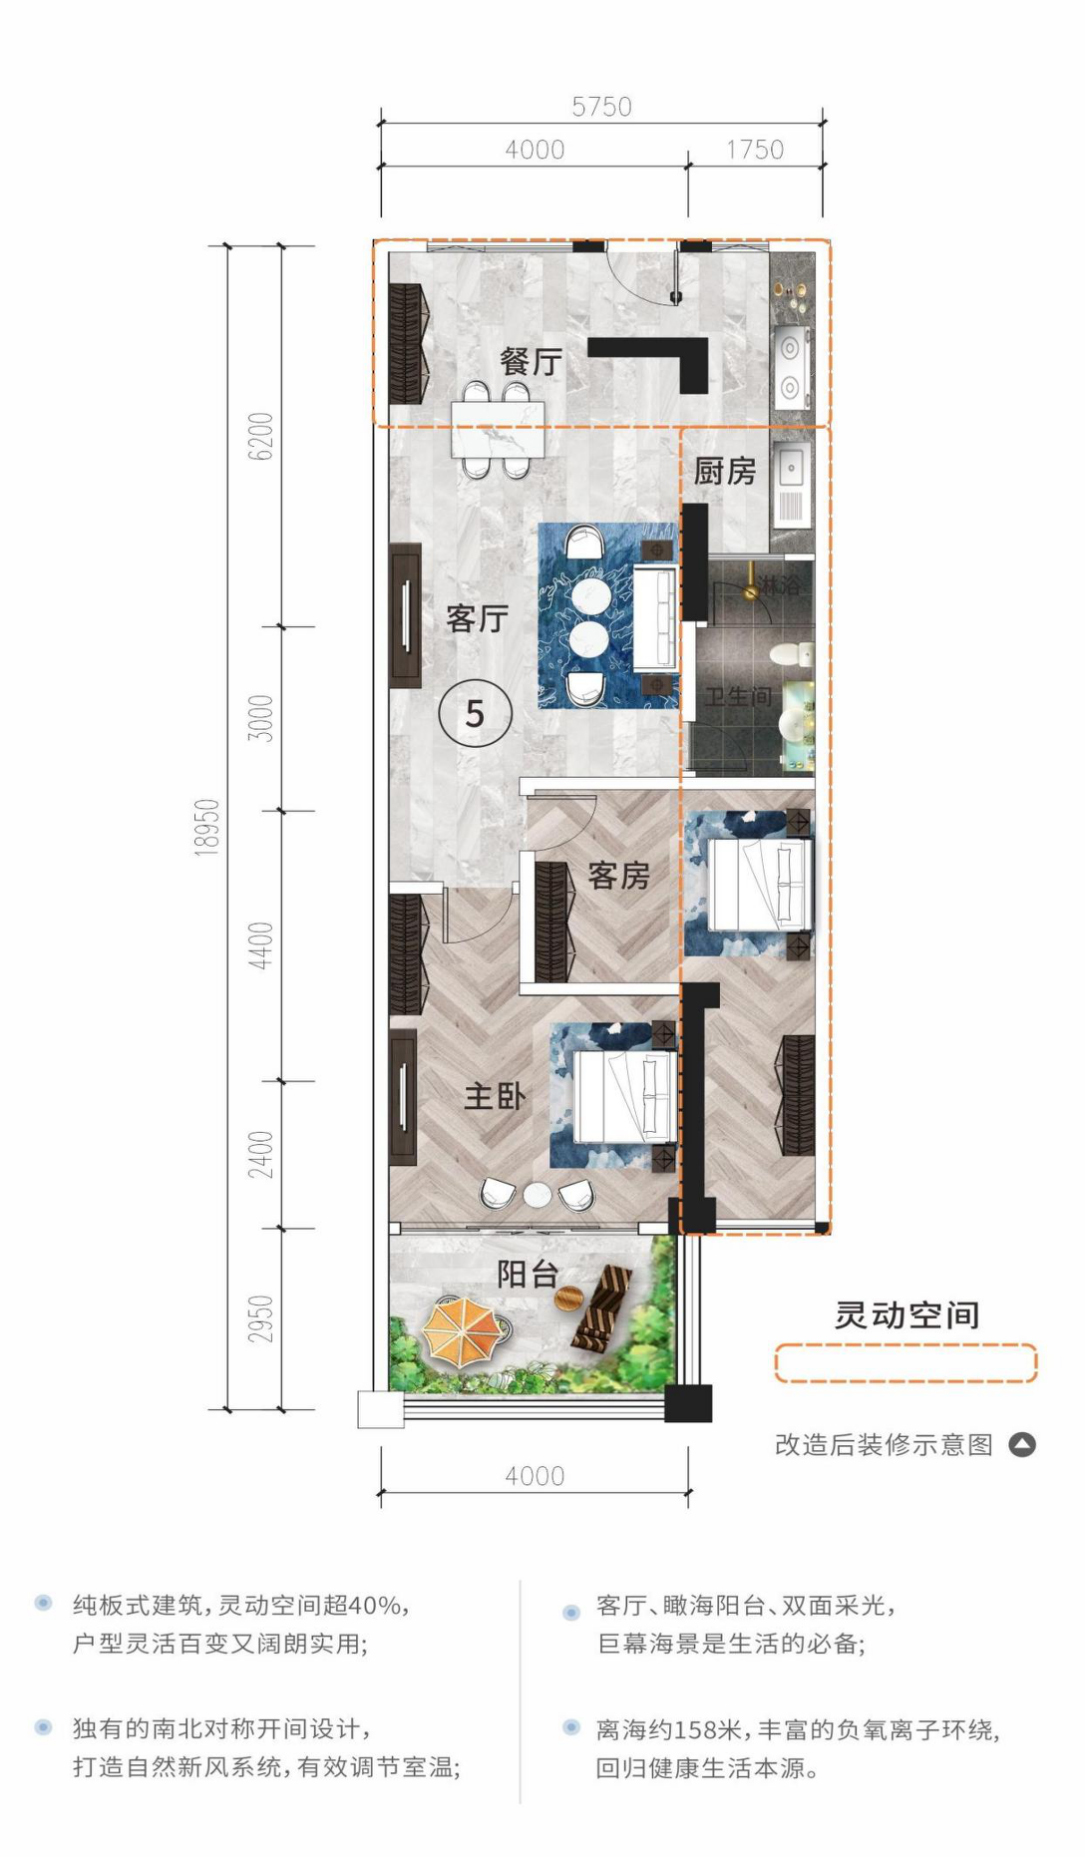 和居壹海江山 高层 05/06户型 建筑面积67㎡ 2房2厅1卫 （使用面积105㎡）